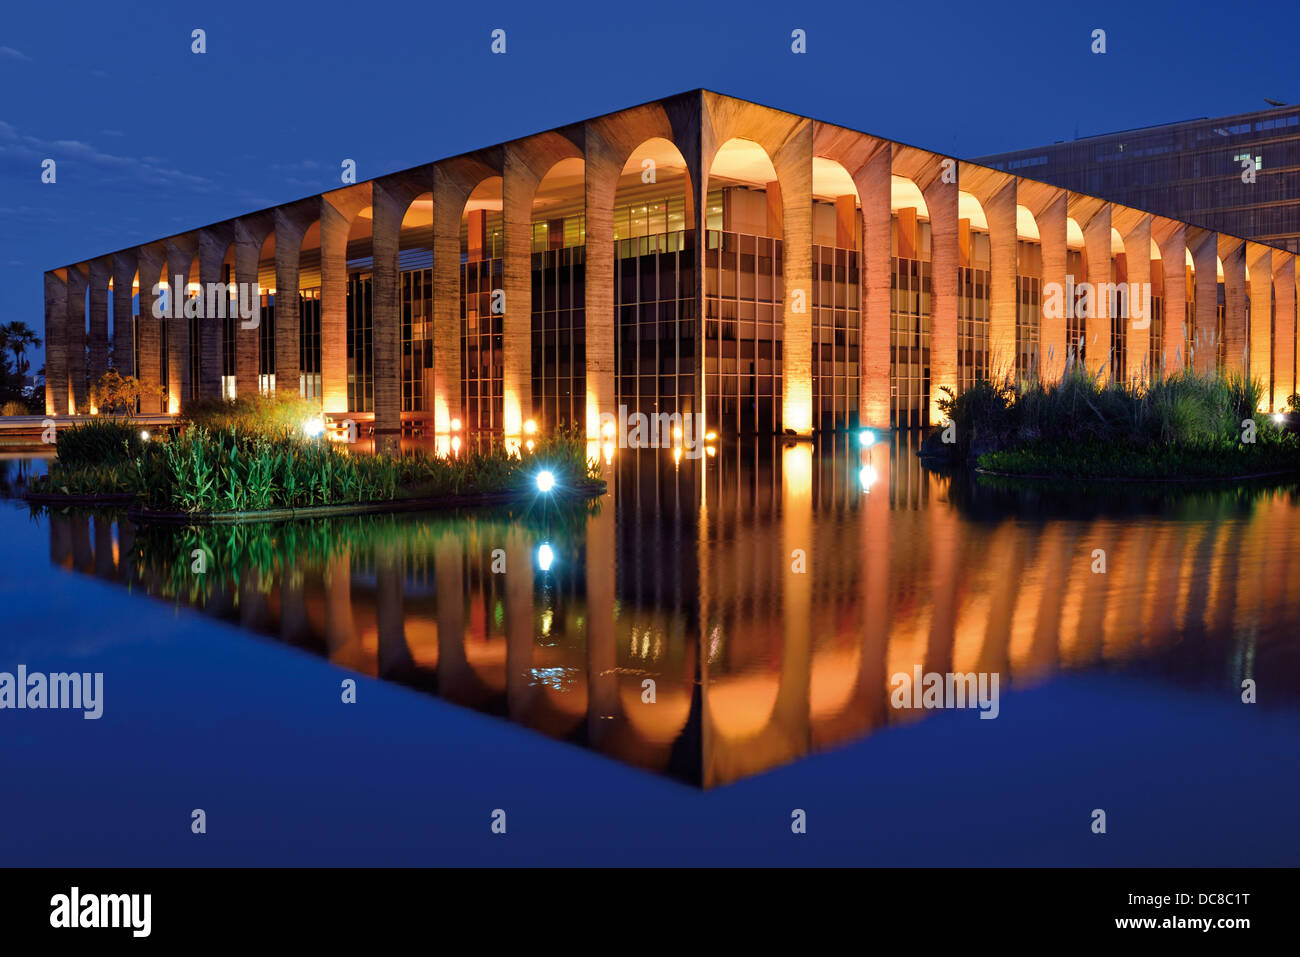 Il Brasile, Brasilia: orologio notturno illuminato edificio del Palacio Itamaraty che ospita il Ministero delle questioni esterne Foto Stock